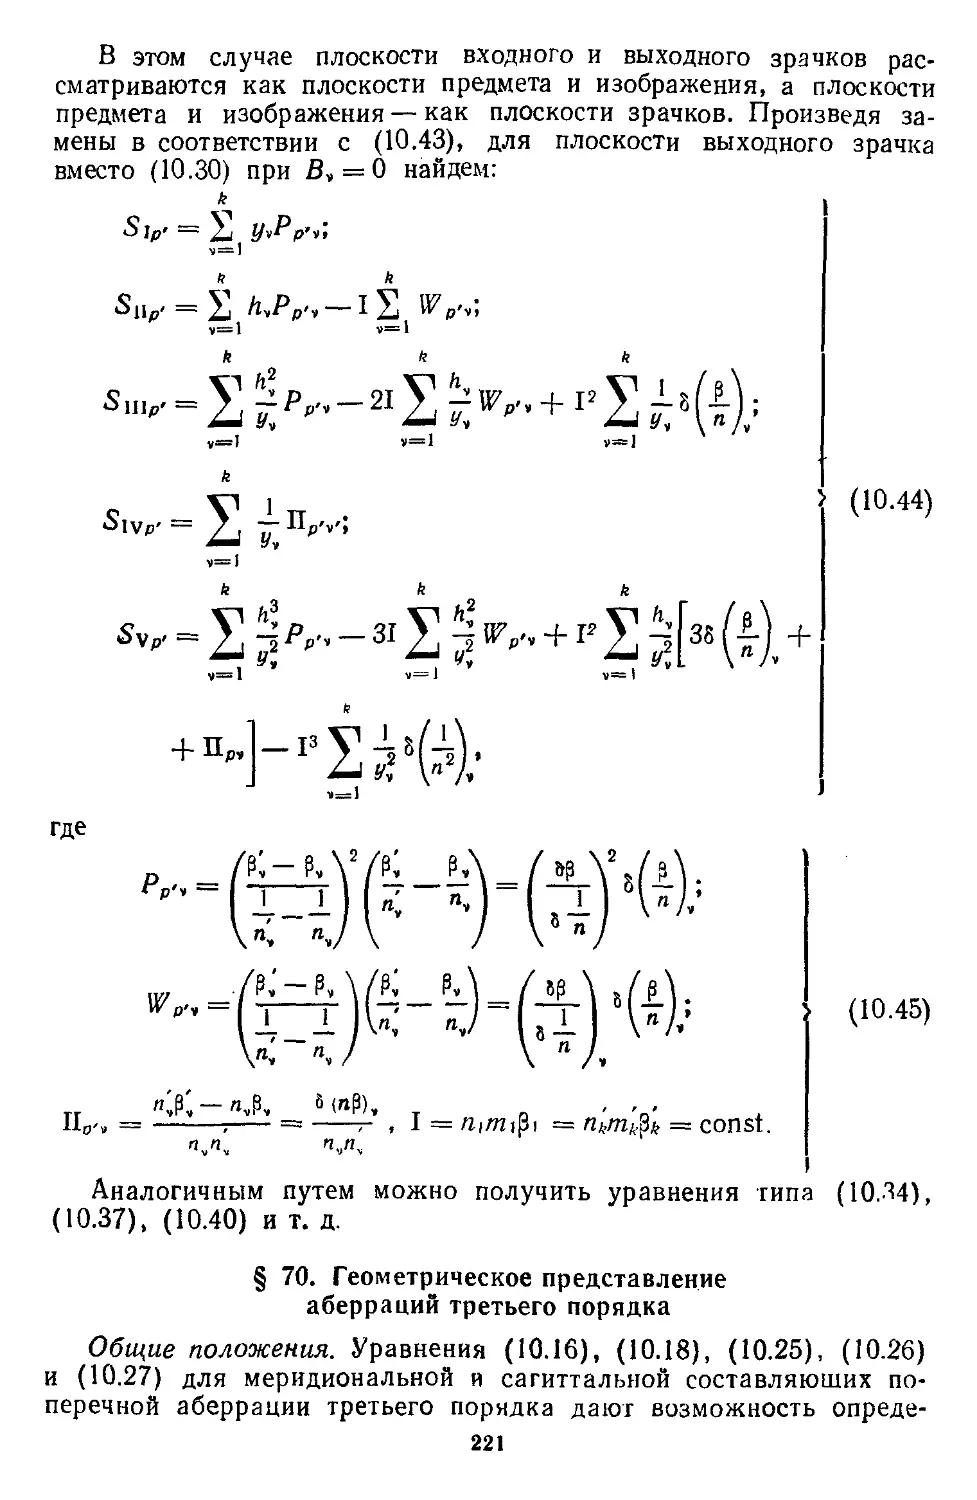 § 70. Геометрическое представление аберраций третьего порядка